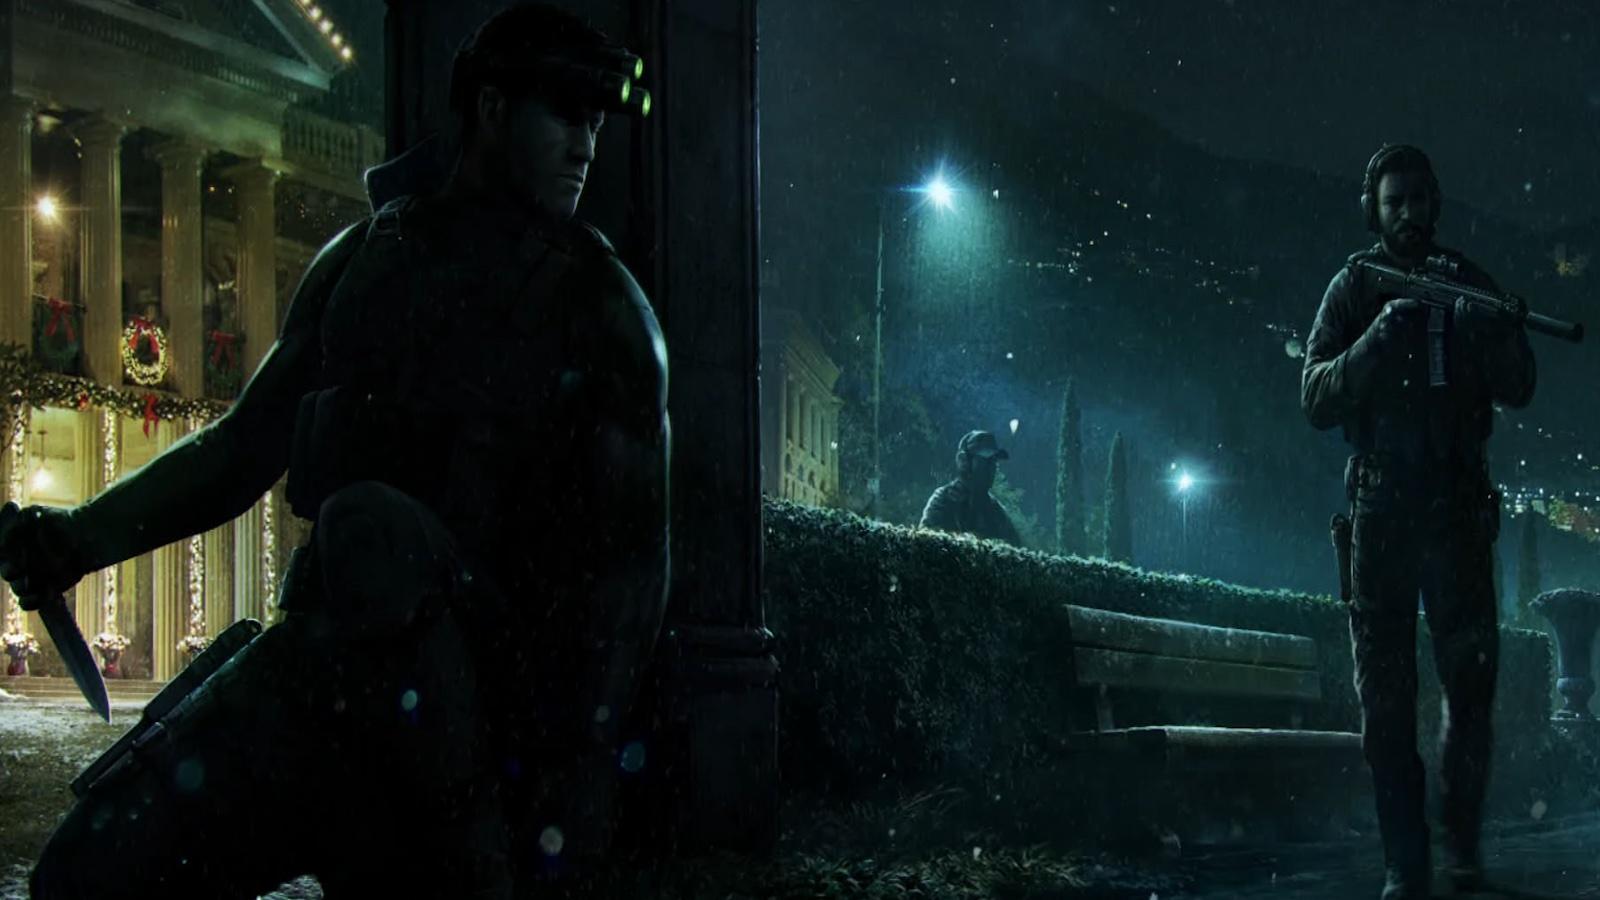 Splinter Cell remake concept art